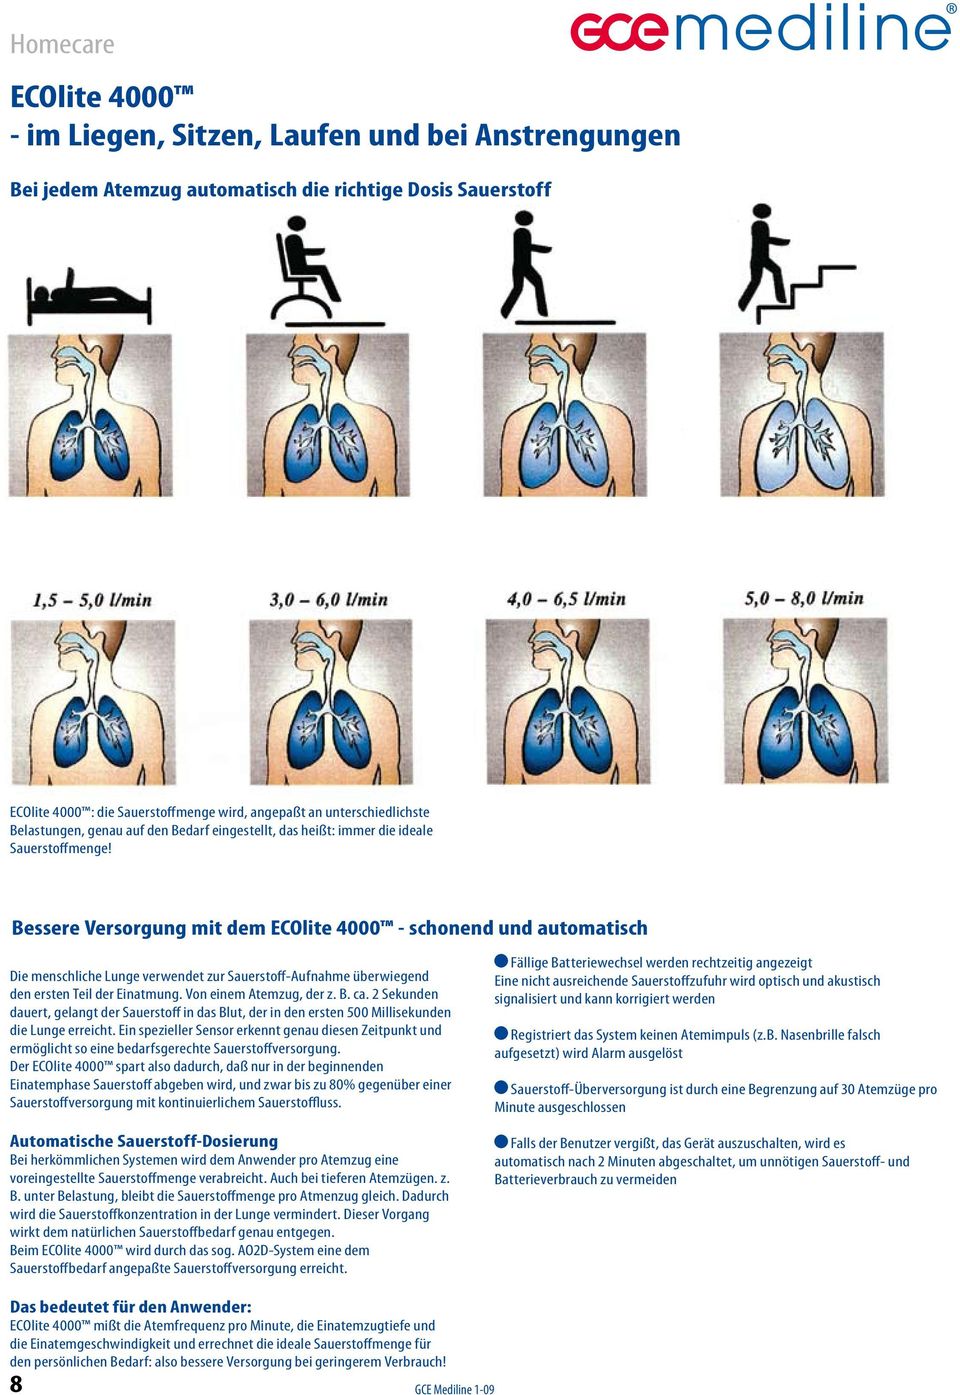 Bessere Versorgung mit dem ECOlite 4000 - schonend und automatisch Die menschliche Lunge verwendet zur Sauerstoff-Aufnahme überwiegend den ersten Teil der Einatmung. Von einem Atemzug, der z. B. ca.